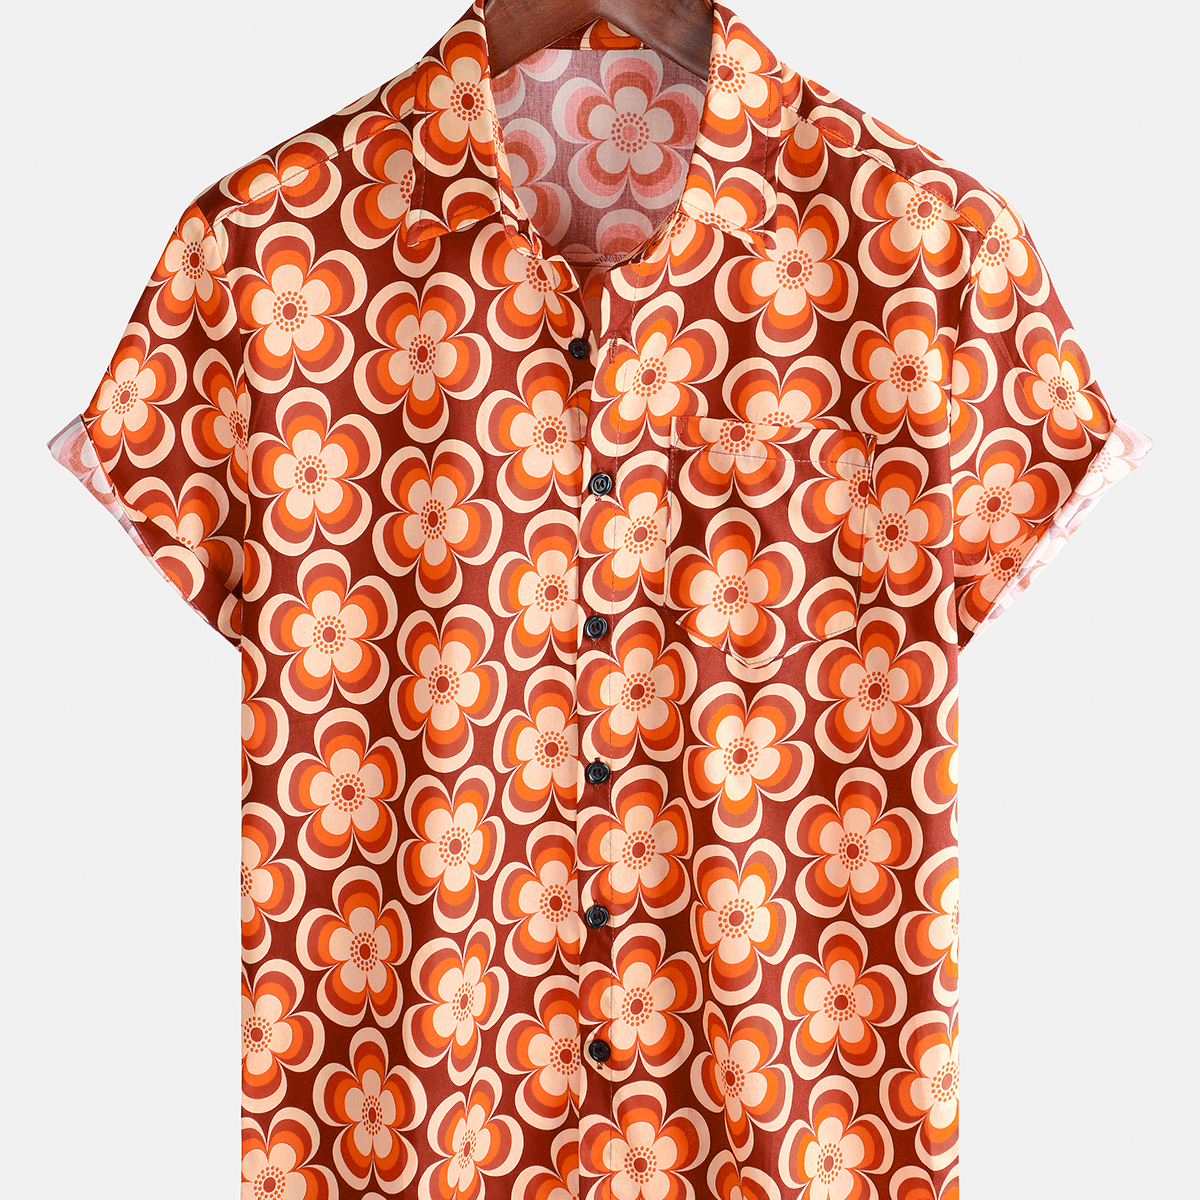 Men's Summer 70s Geometric Summer Beach Cool Short Sleeve Shirt